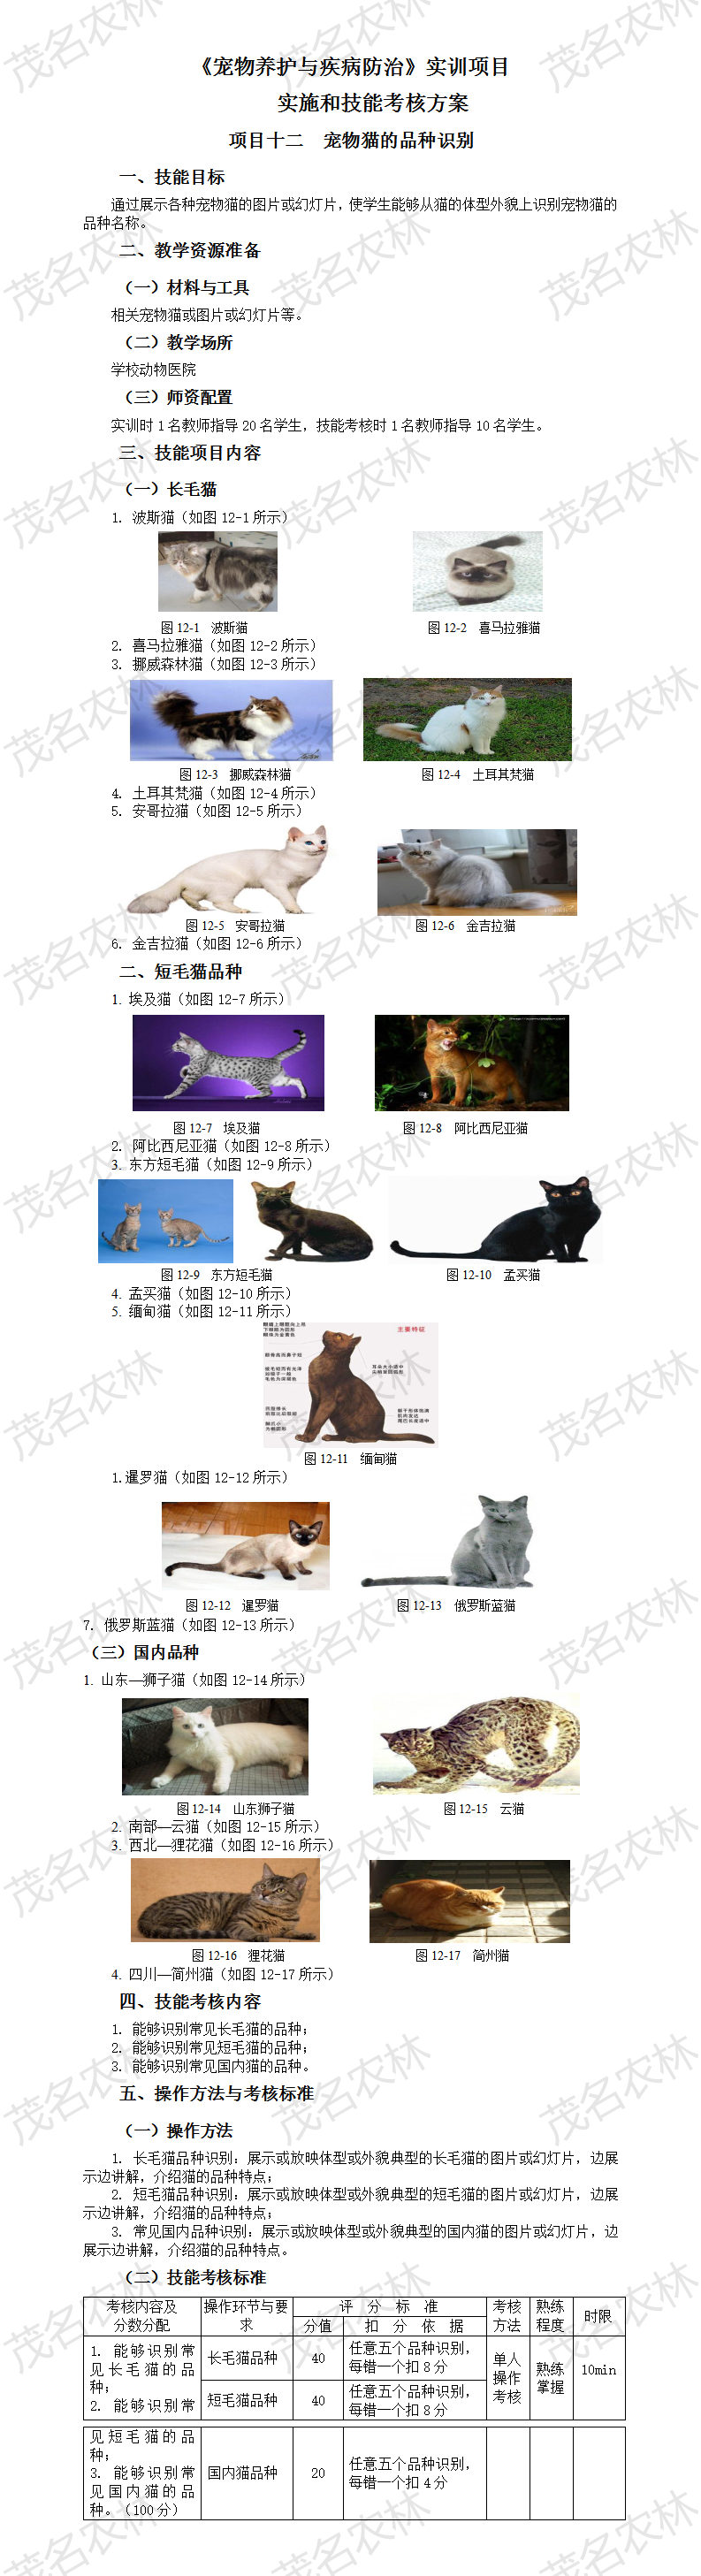 实训12 宠物猫的品种识别.png